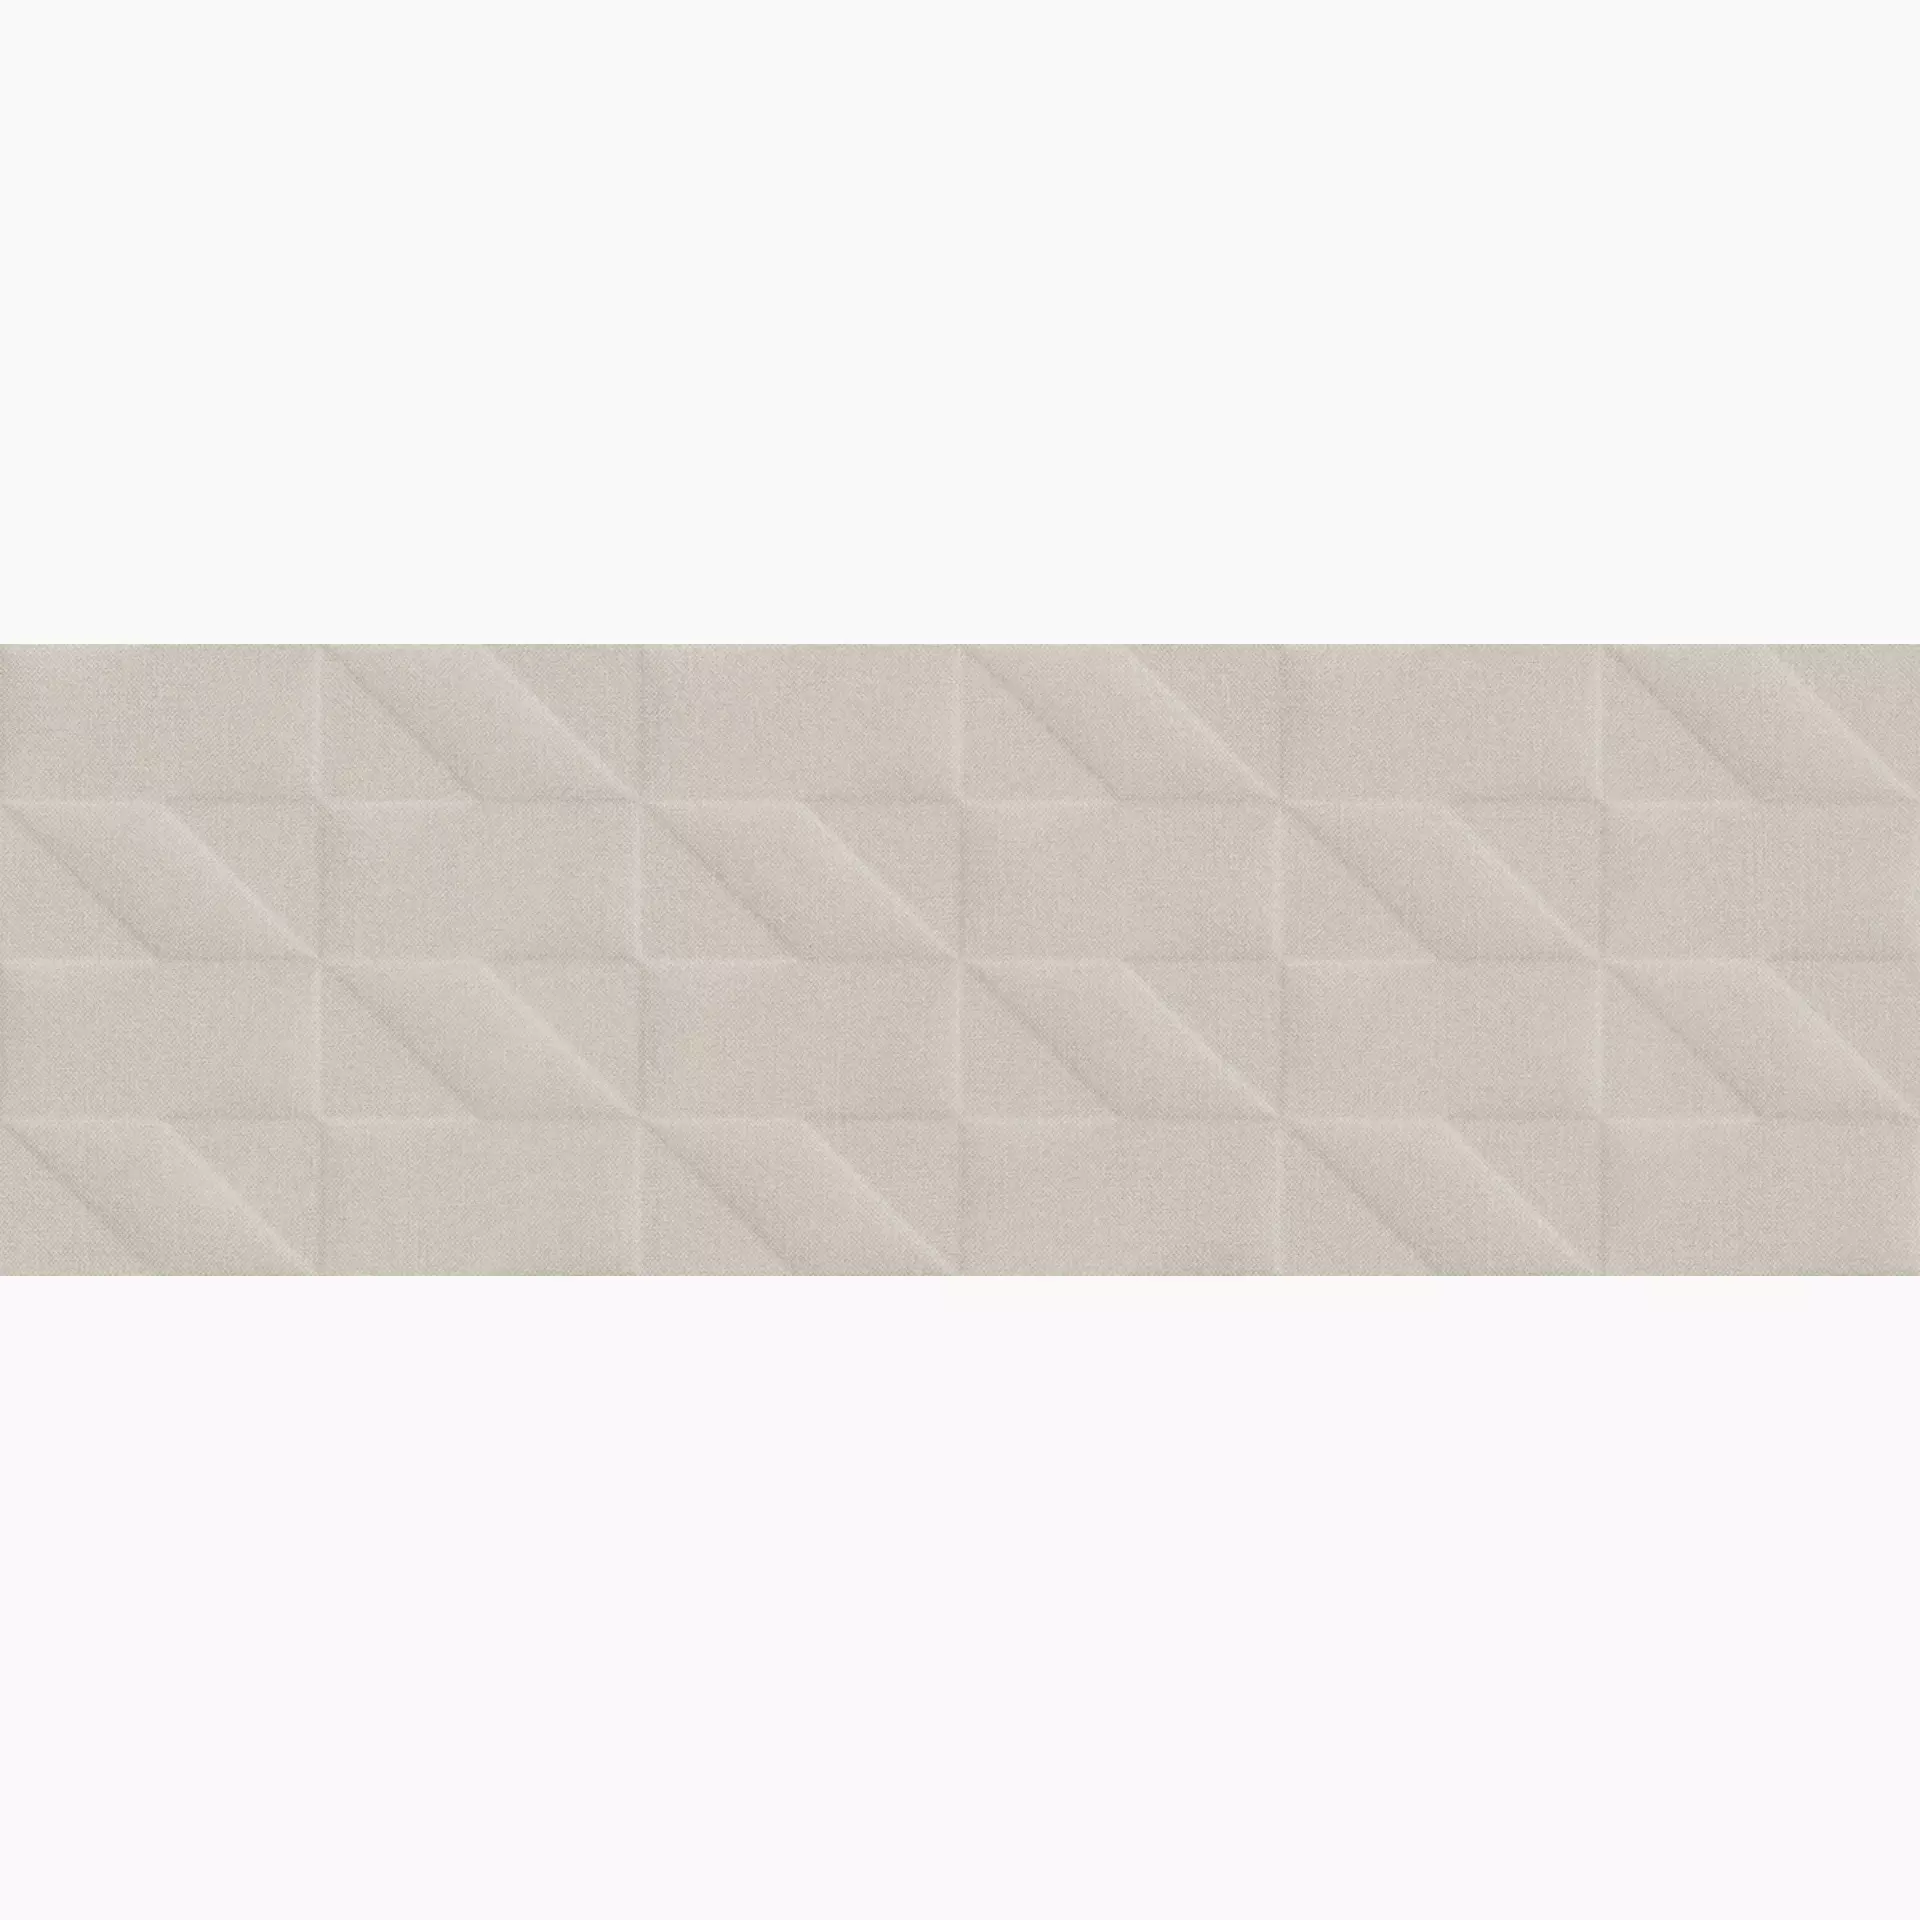 Wandfliese Marazzi Outfit Grey Struttura Grey M128 struktur 25x76cm Tetris 3D 9mm